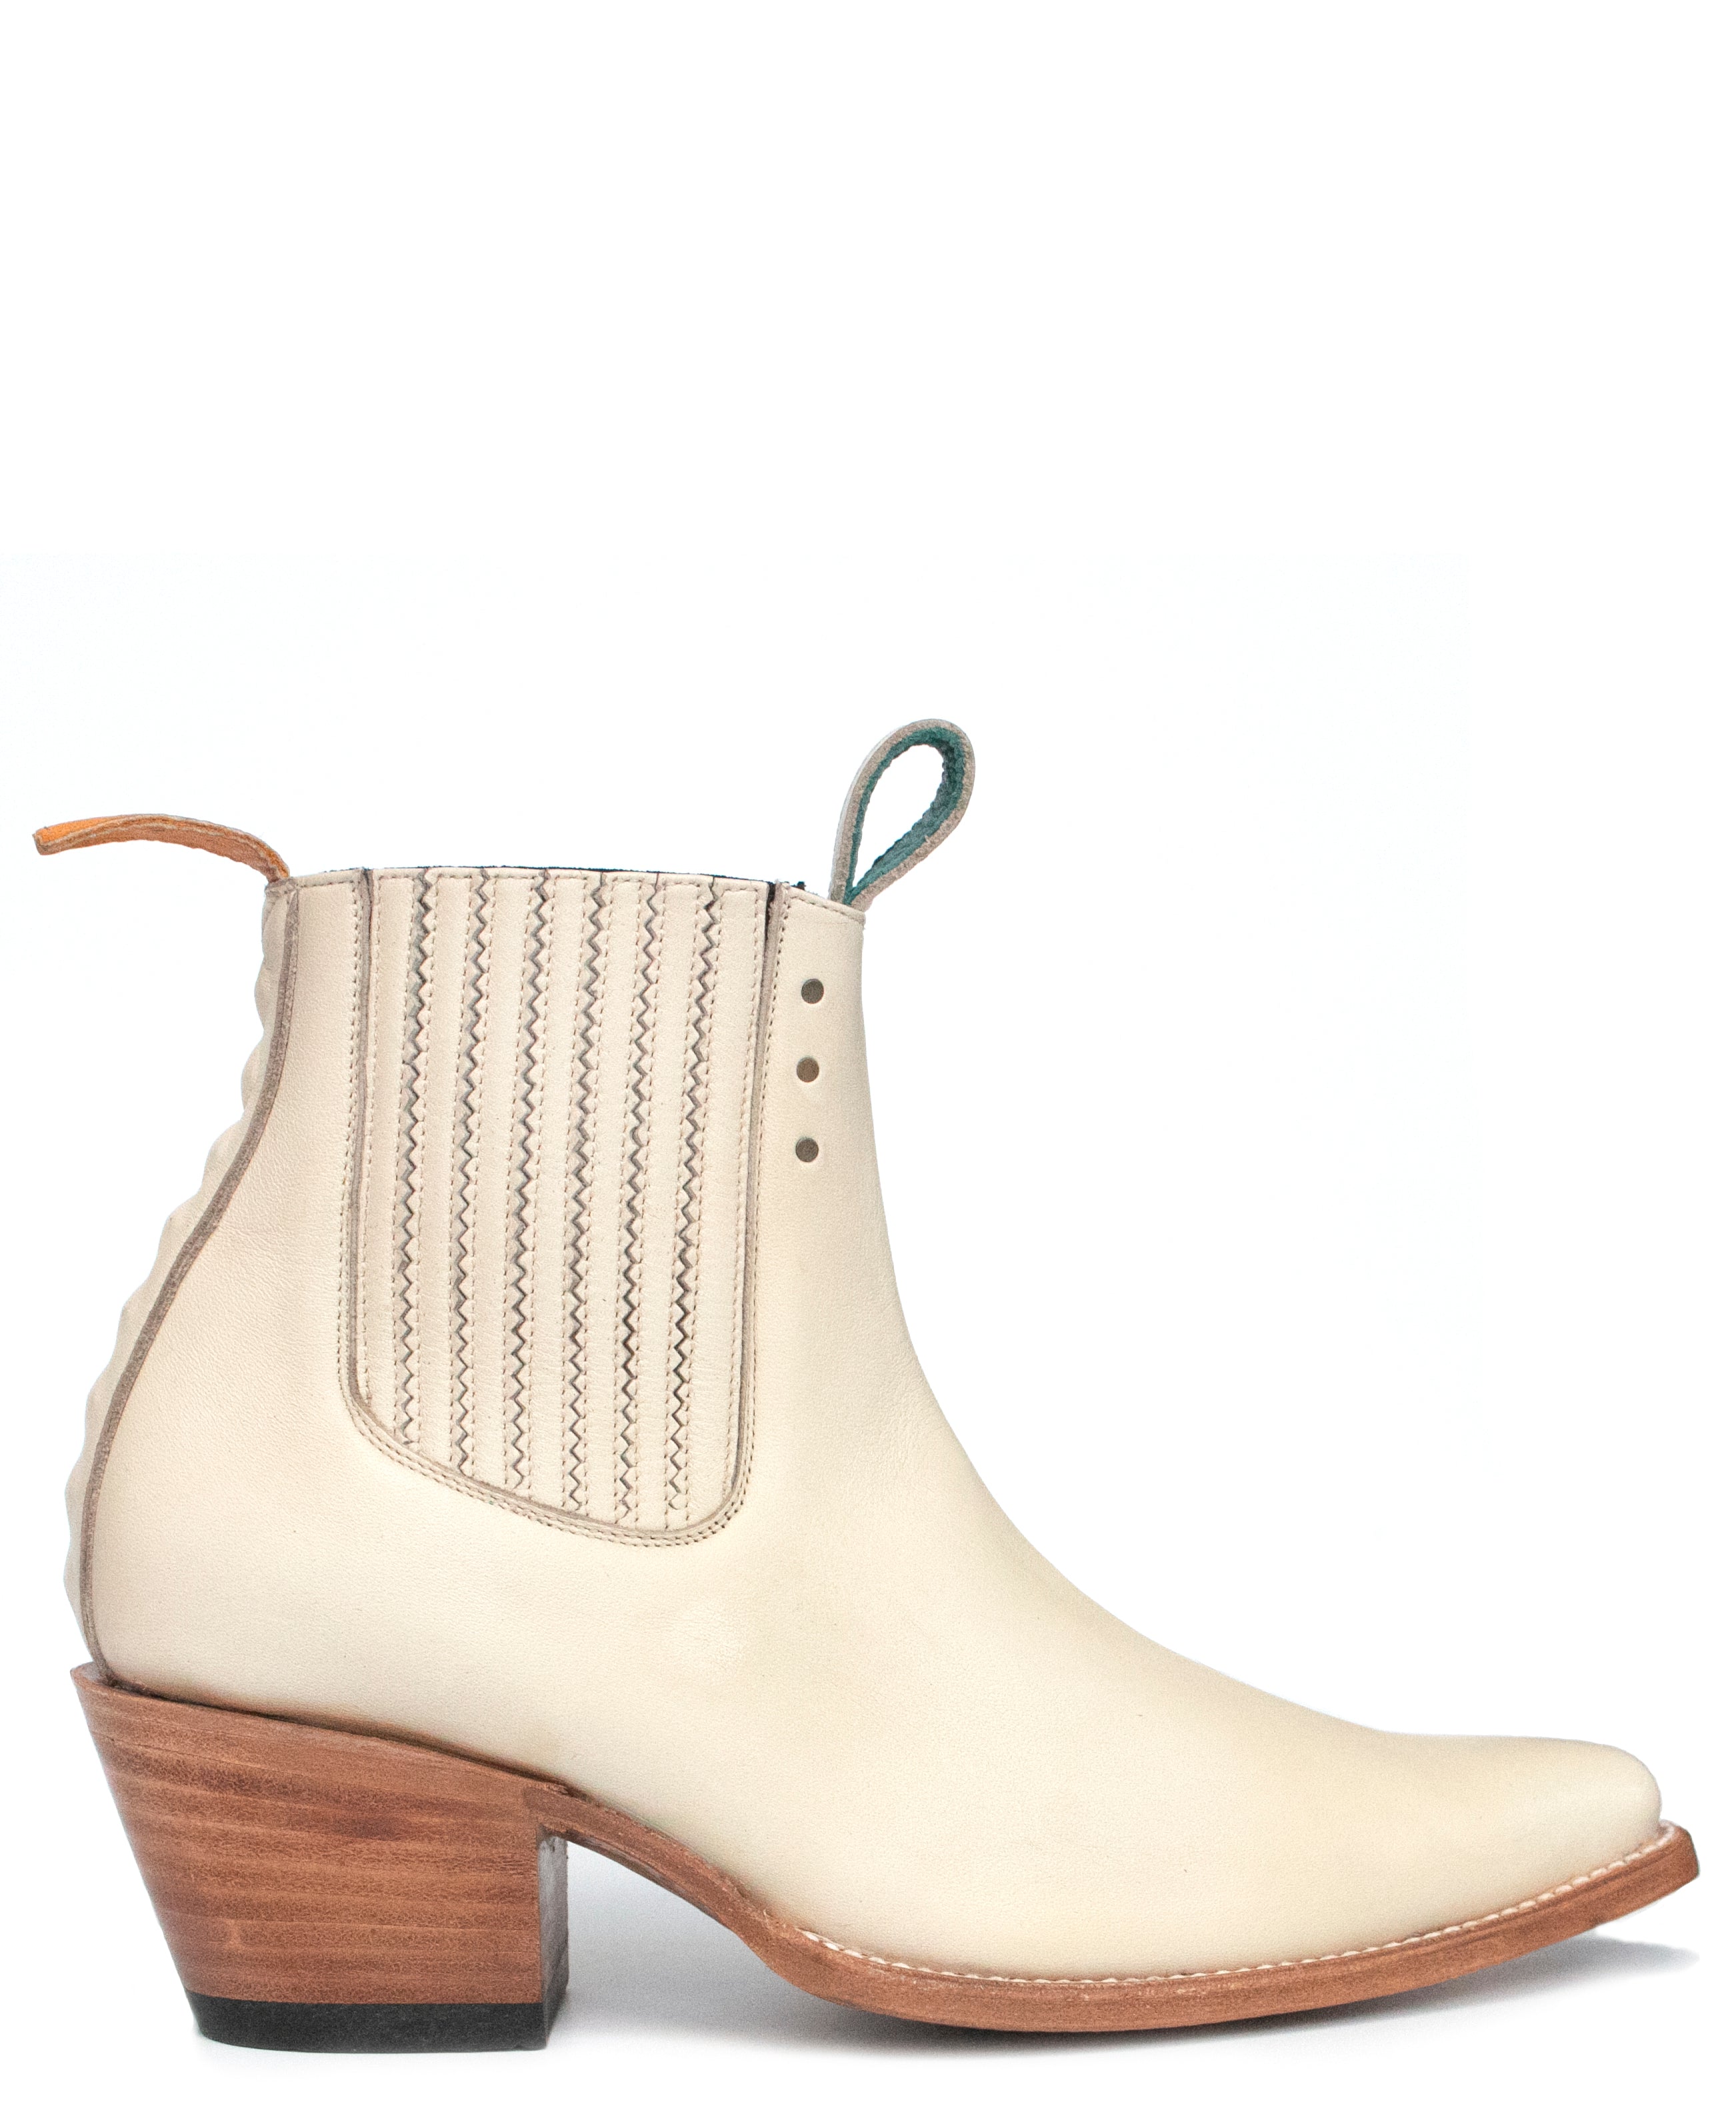 No.1001 FREEWAY chelsea boot - bone leather WOMEN pskaufmanfootwear